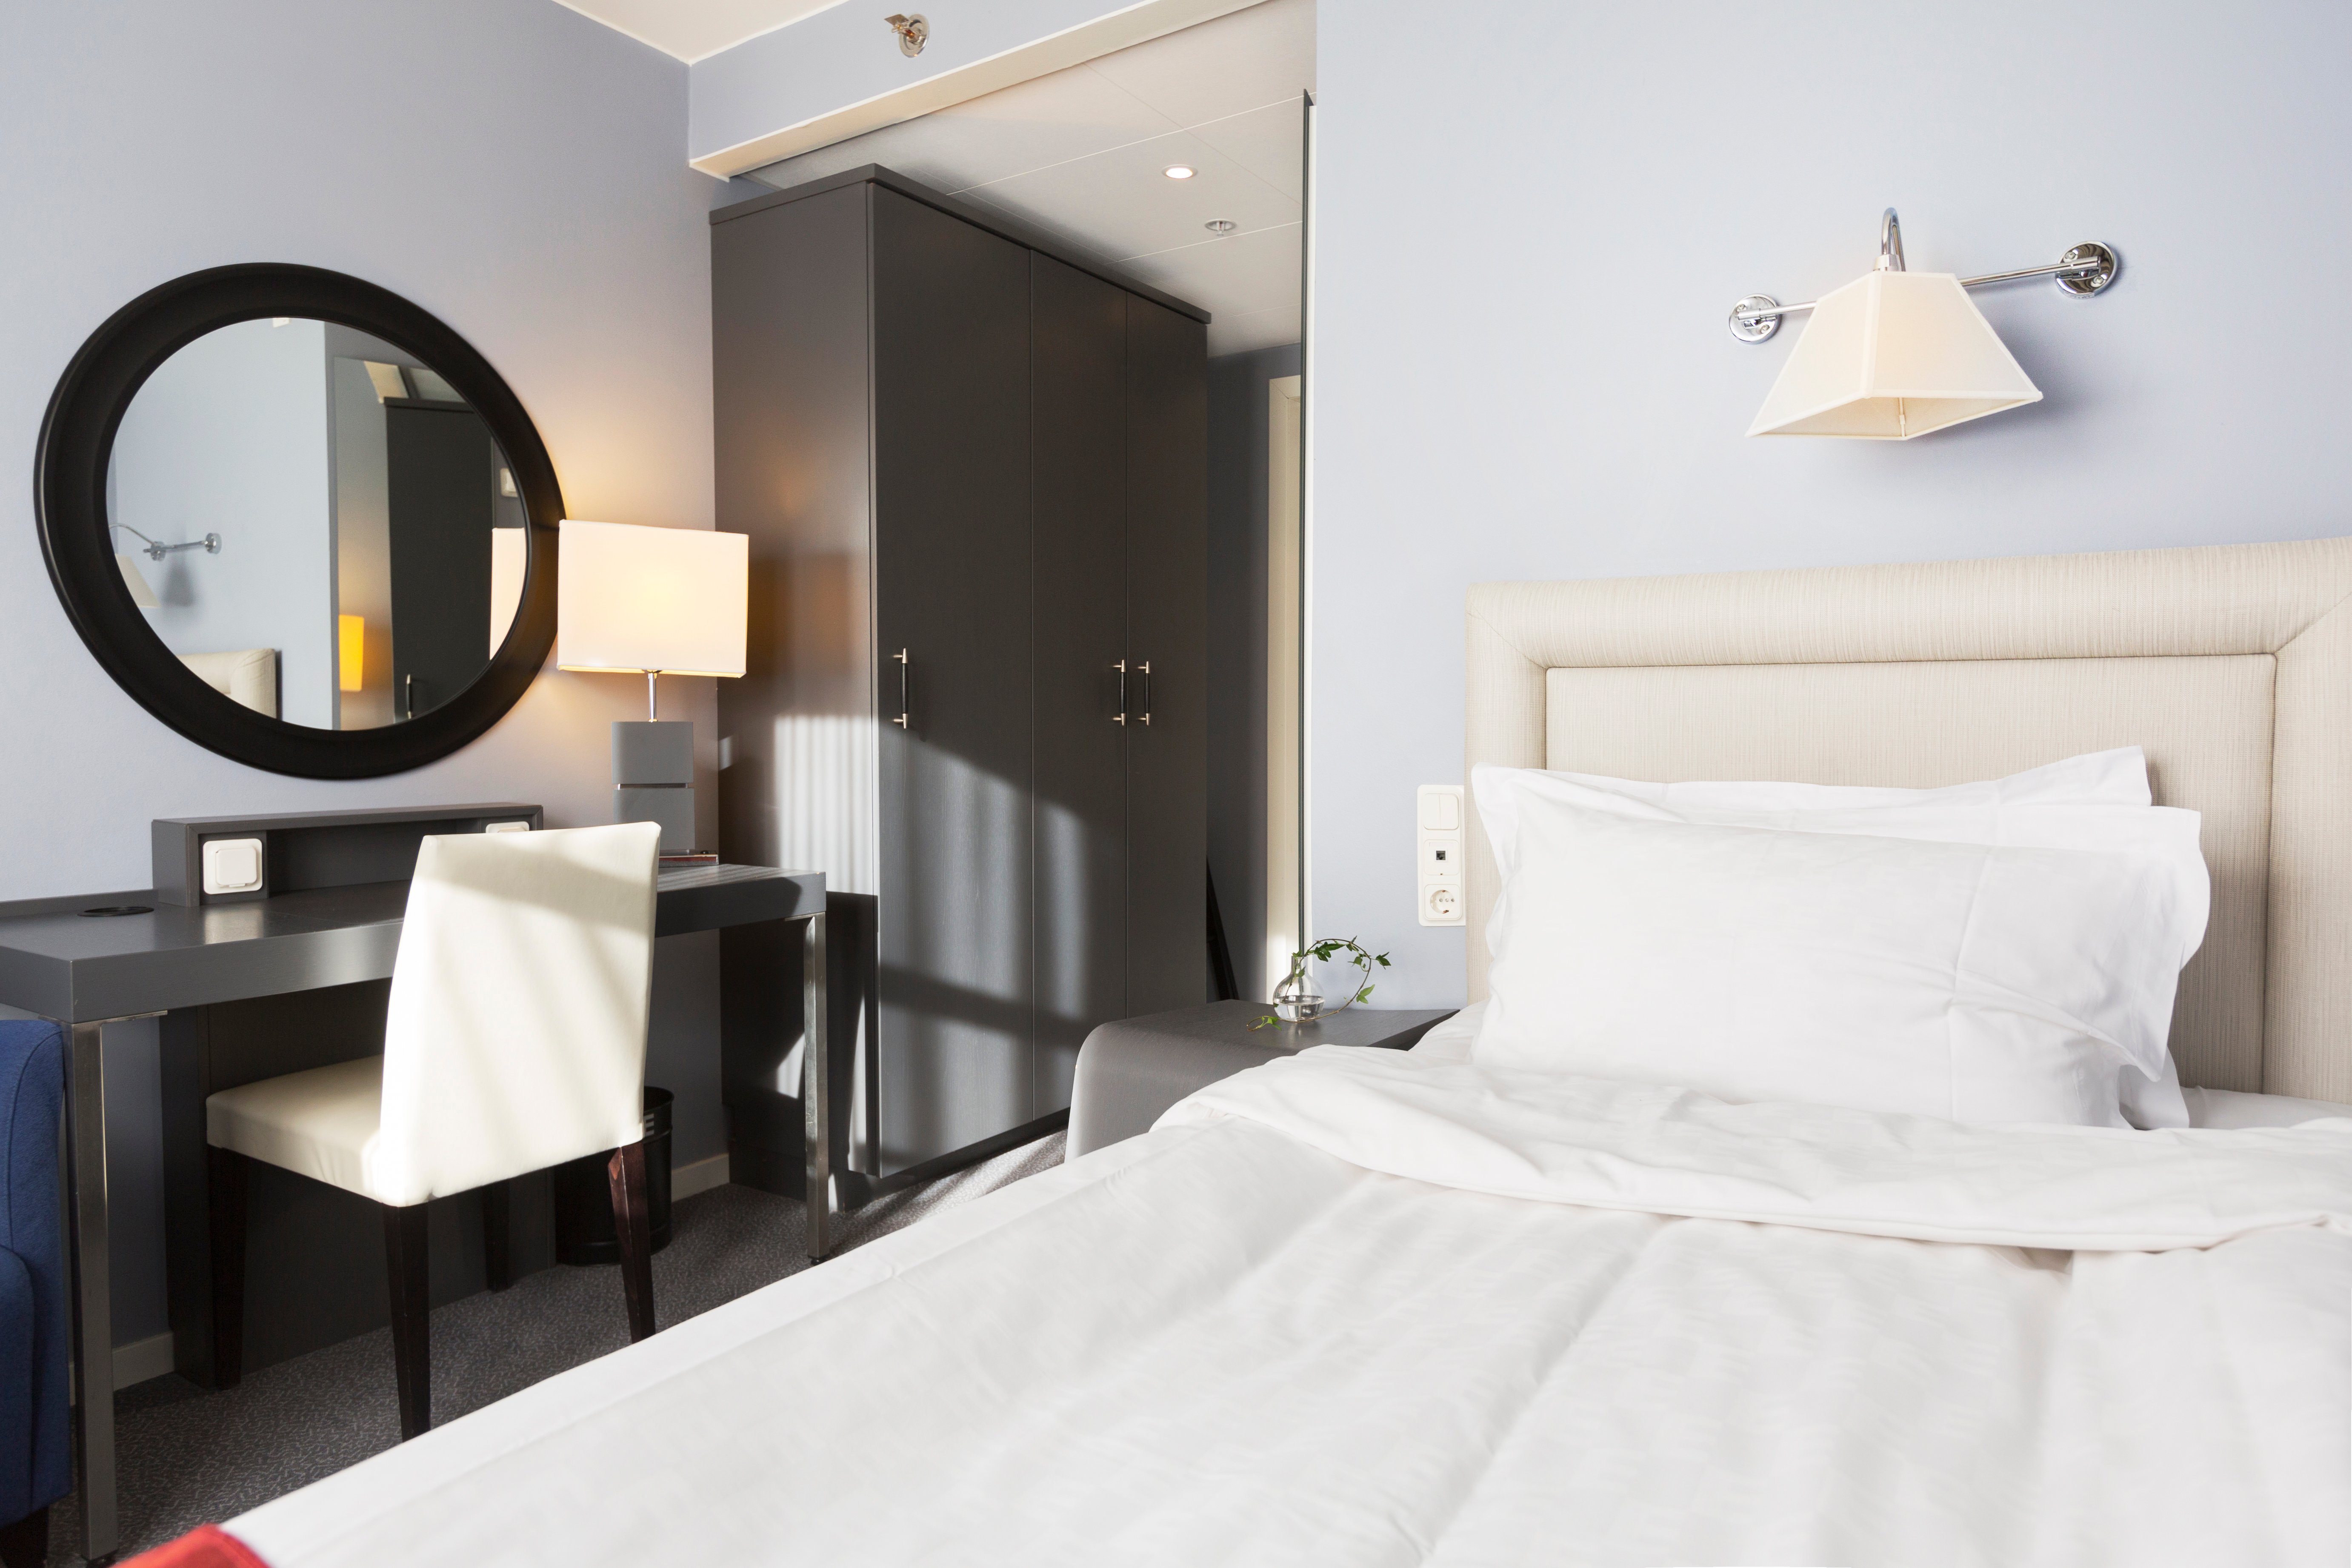 Litet hotellrum med säng, skrivbord och spegel